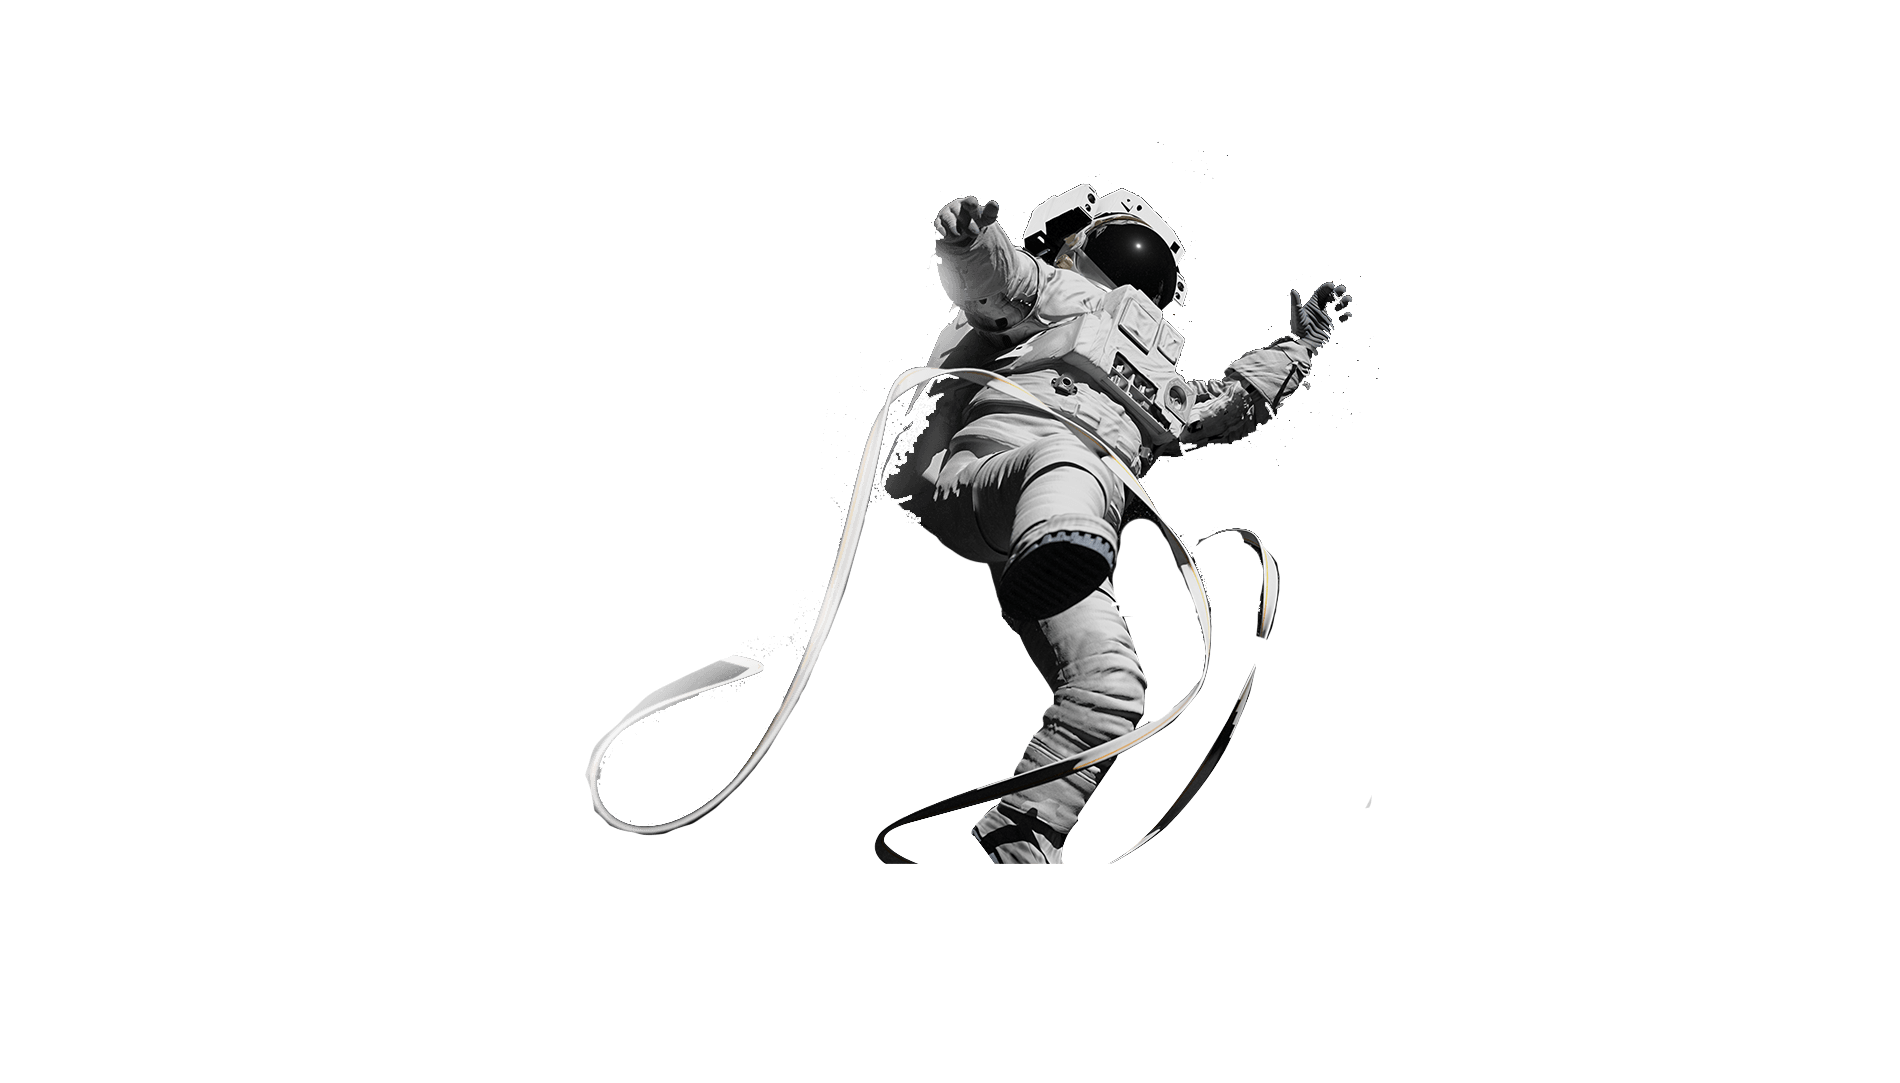 Astronauta